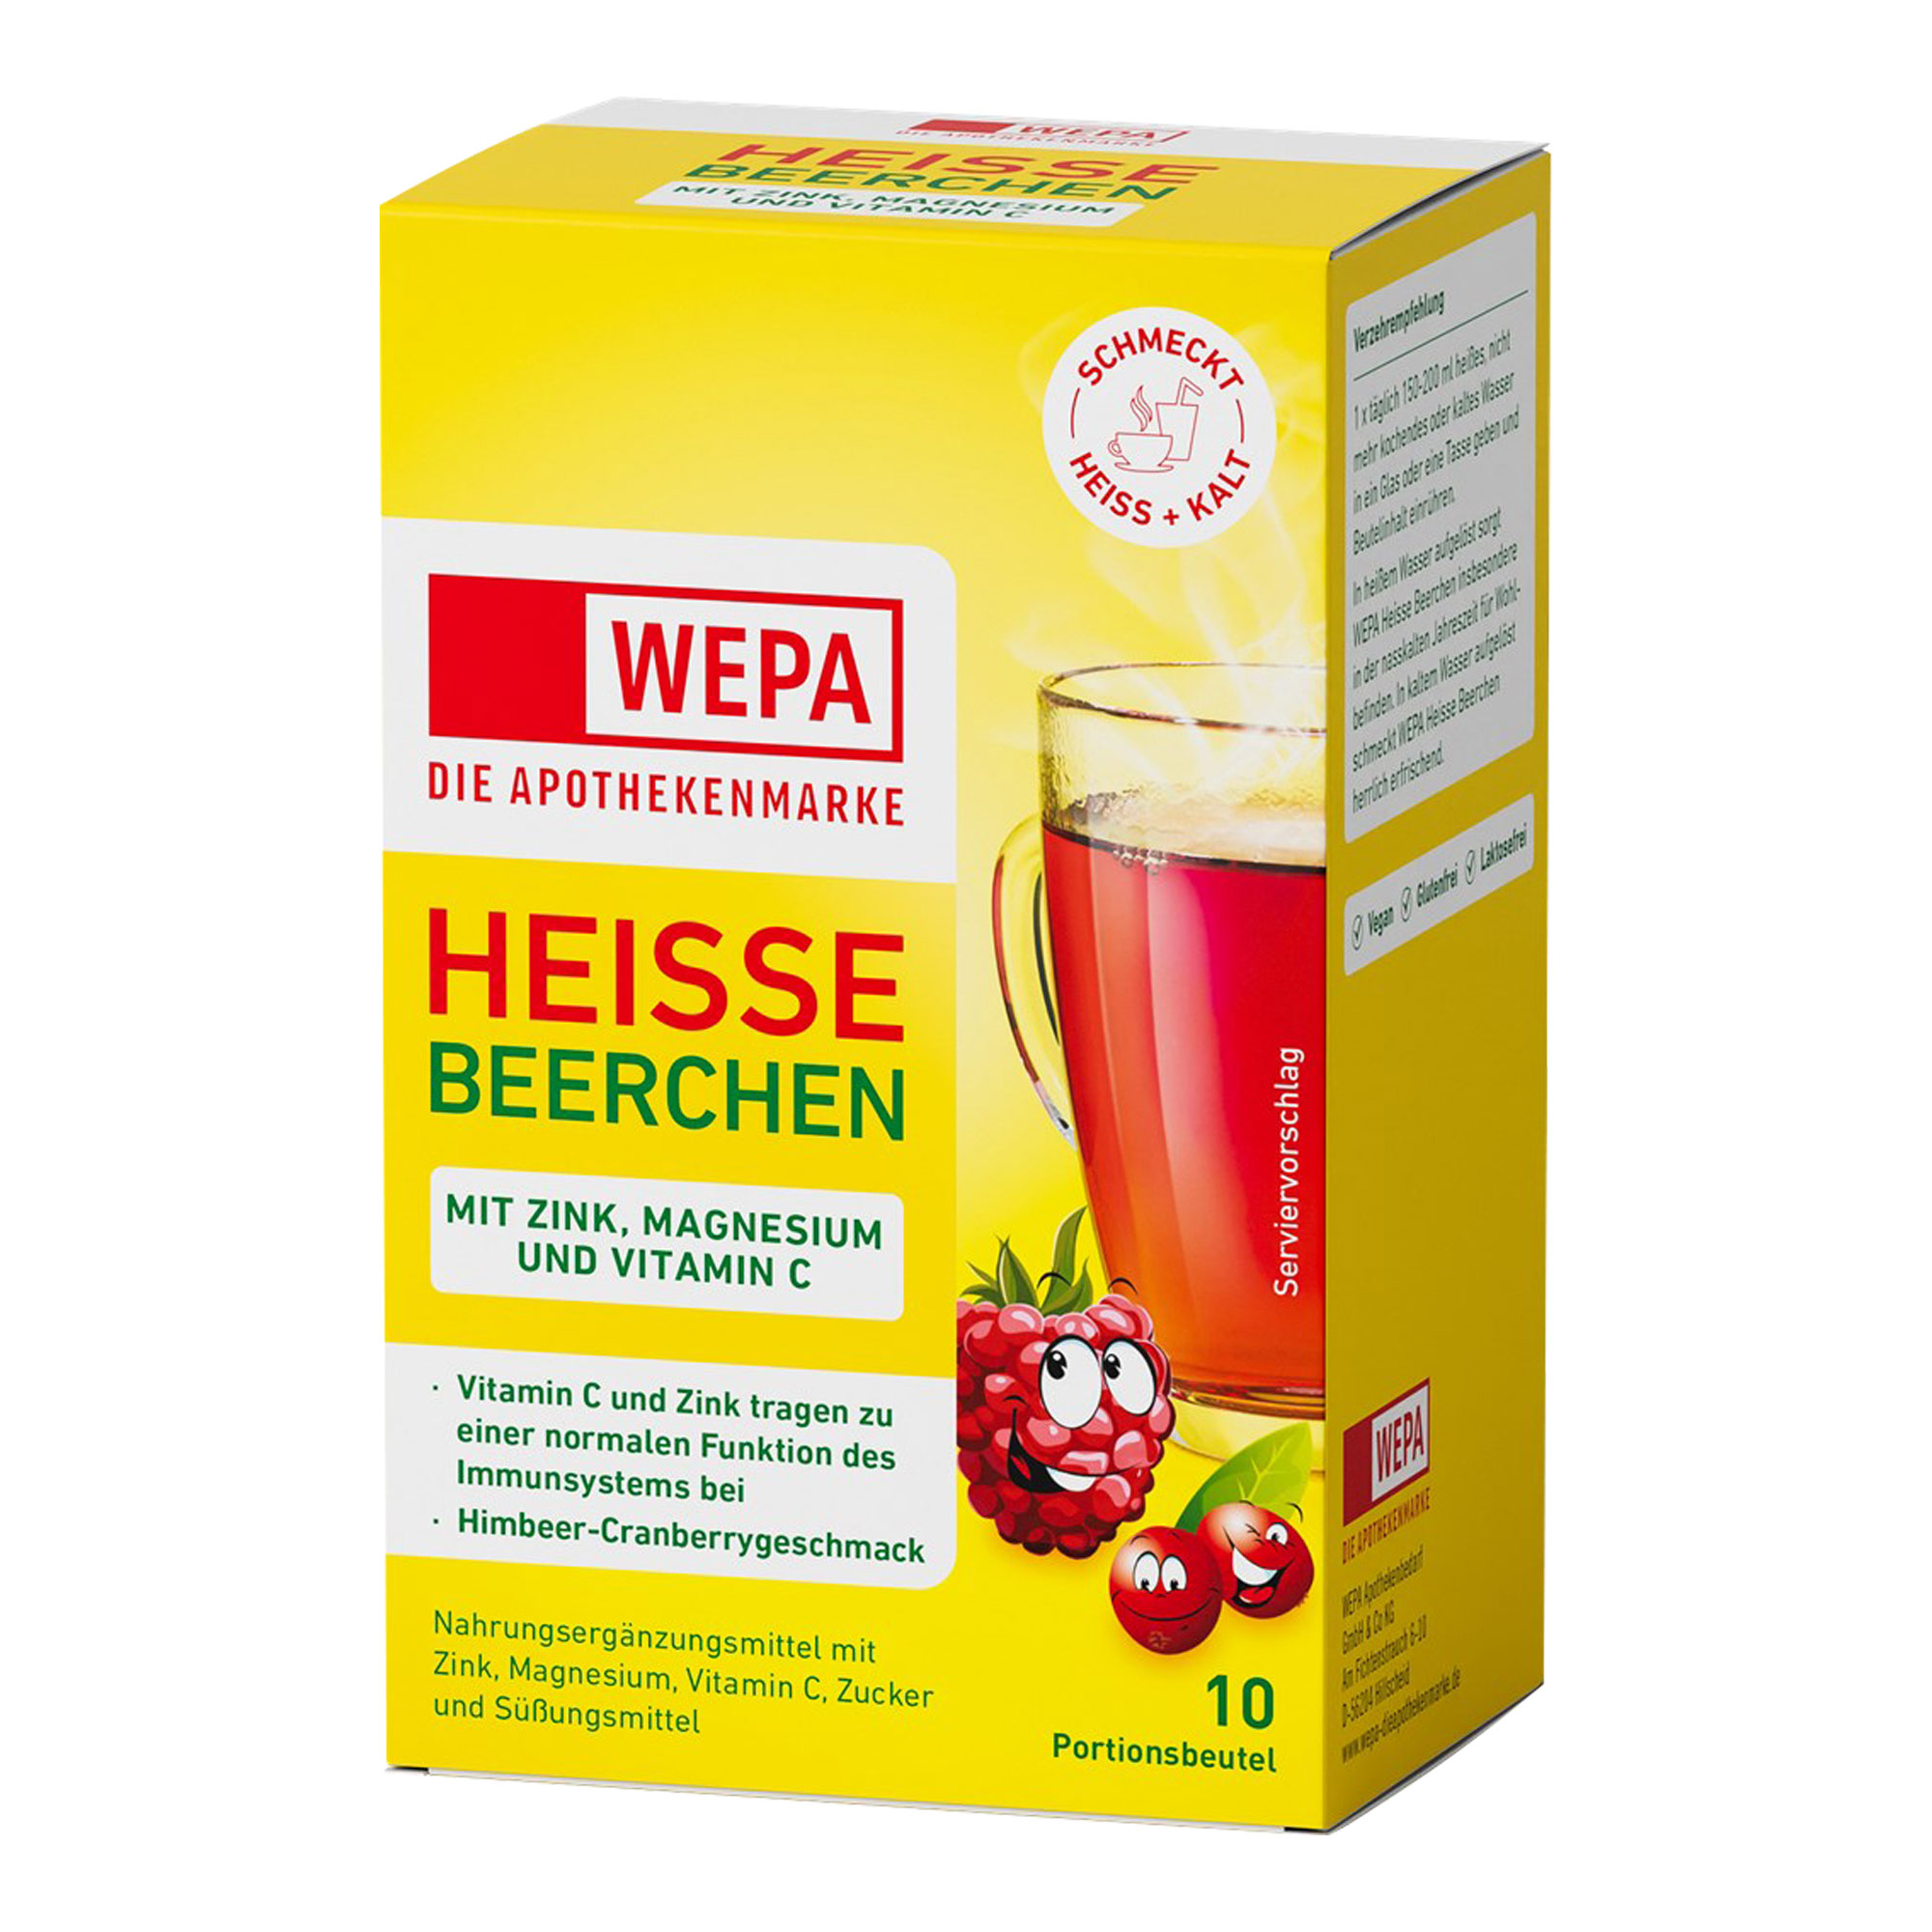 Nahrungsergänzungsmittel mit Zink, Magnesium und Vitamin C. Mit Himbeer-Cranberrygeschmack.